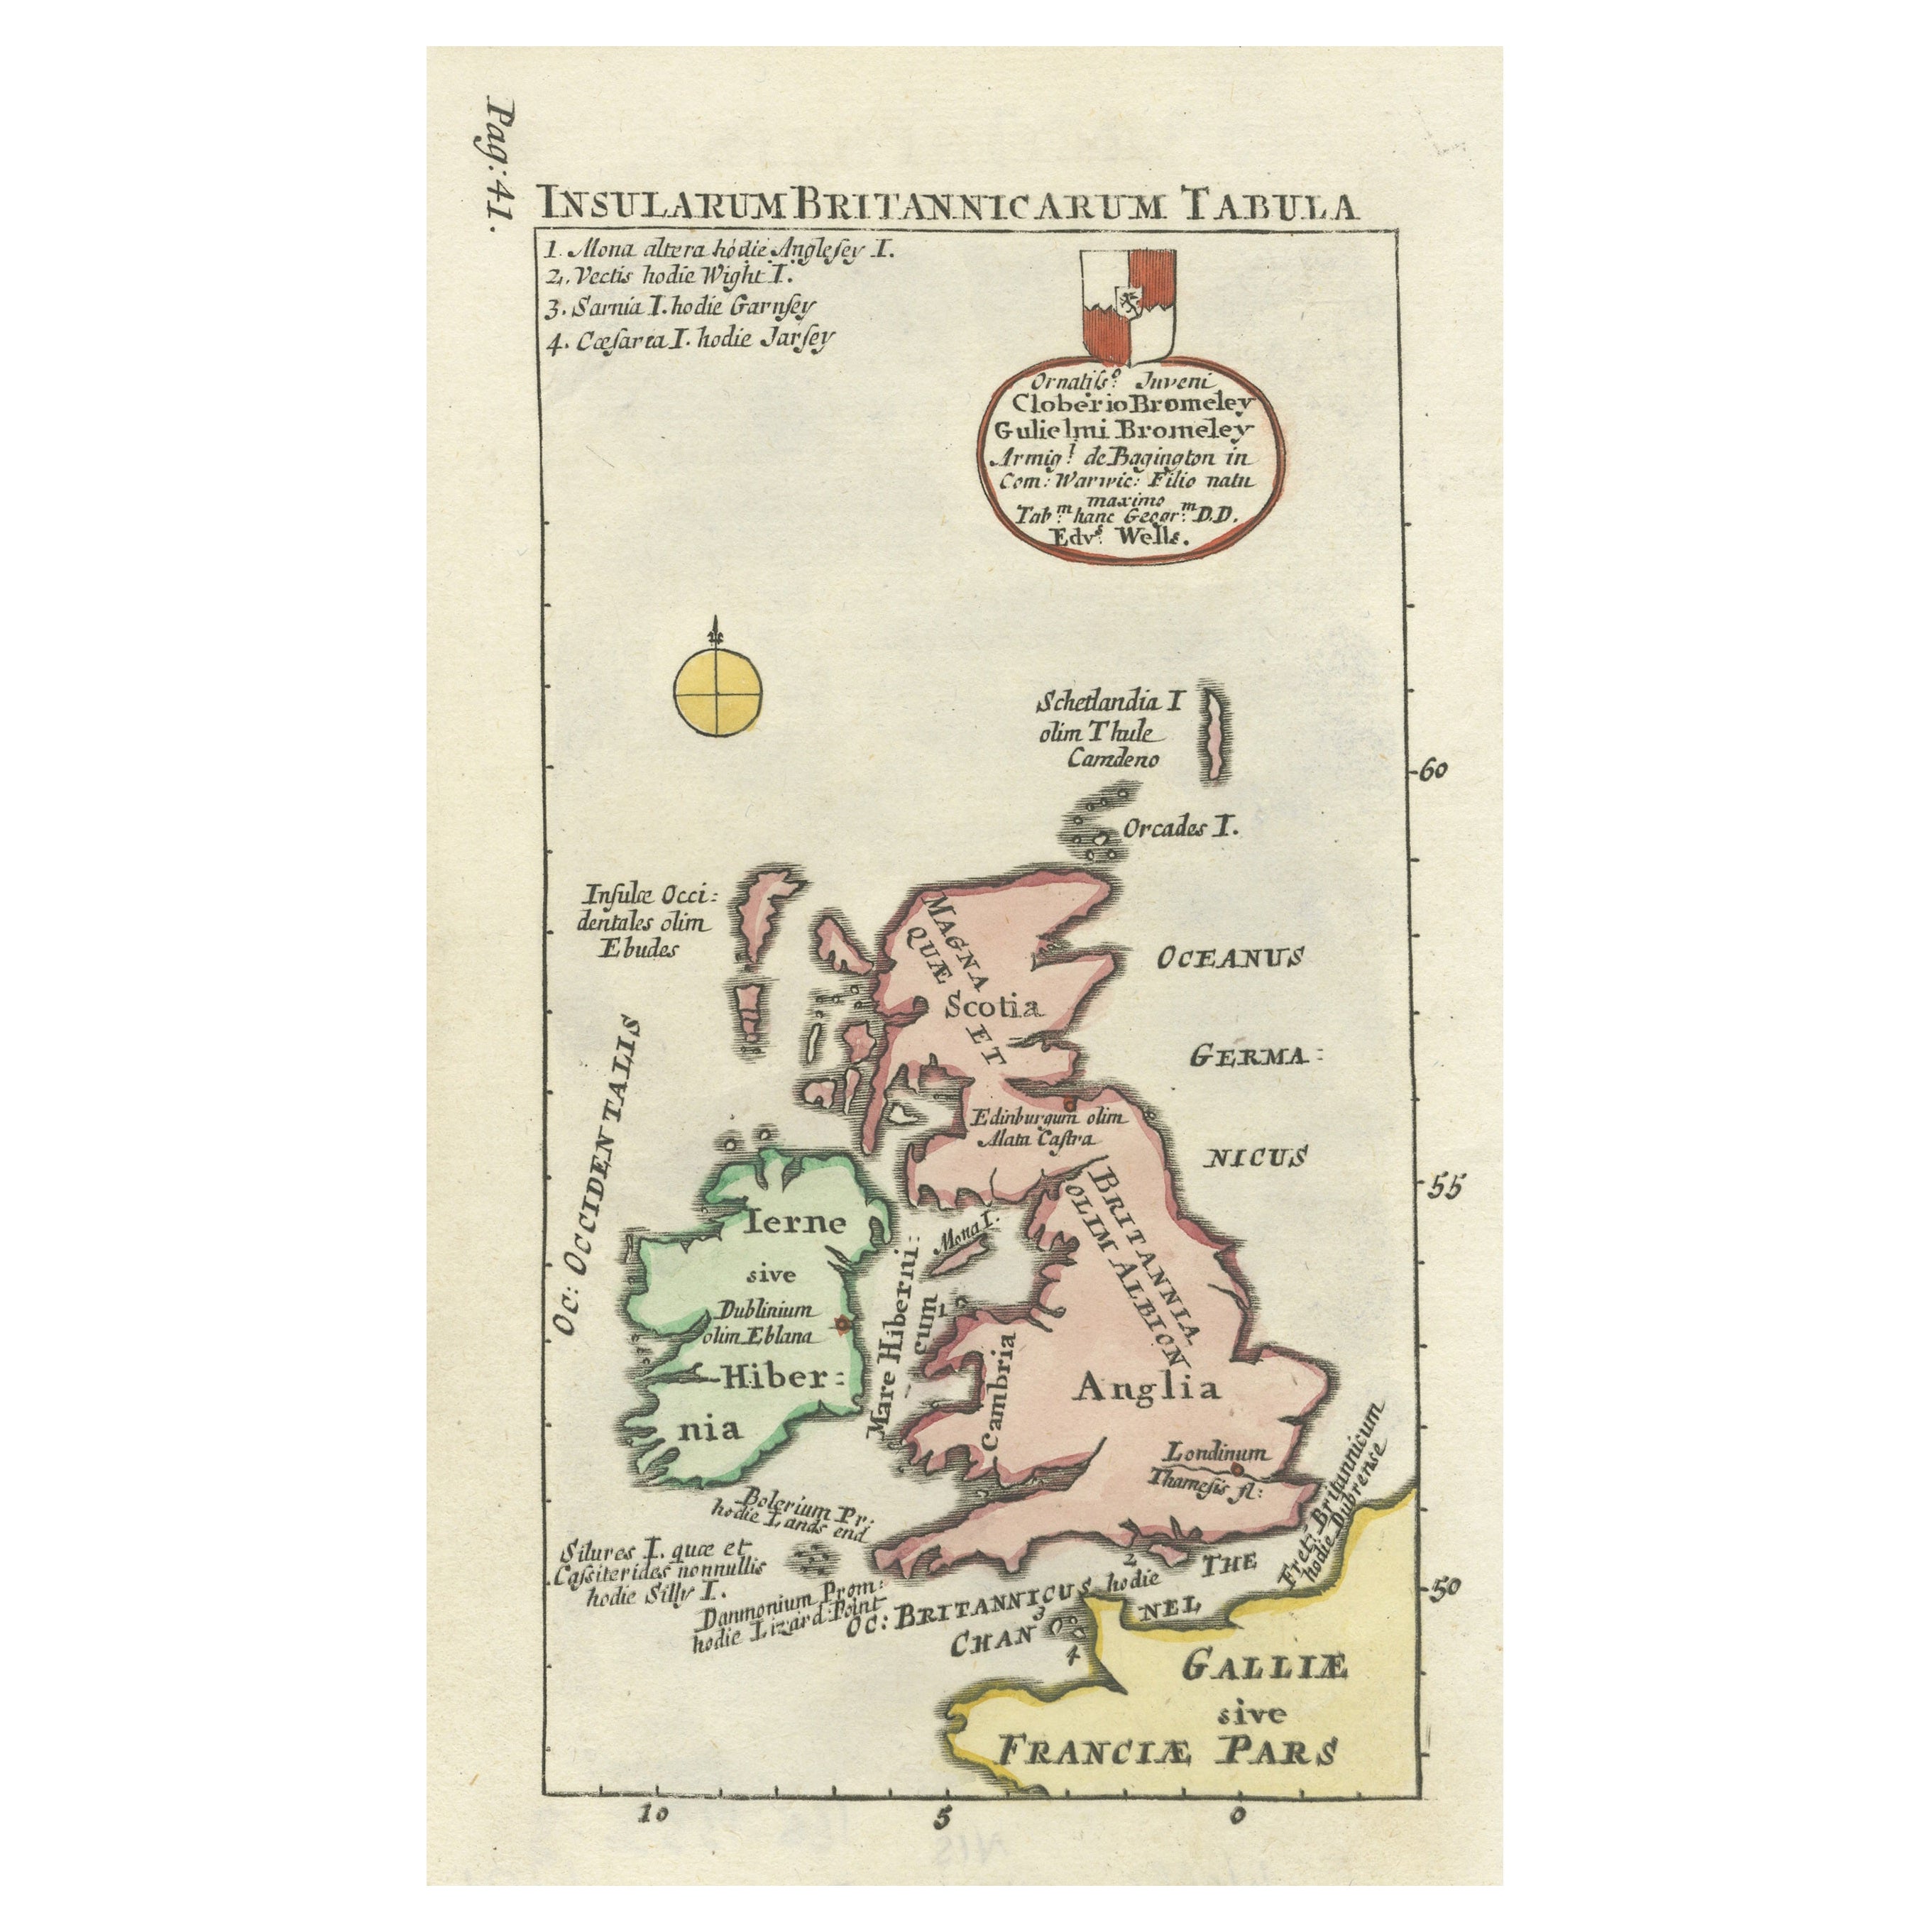 Interessante kleine Karte der britischen Inseln mit handkoloriertem Muster